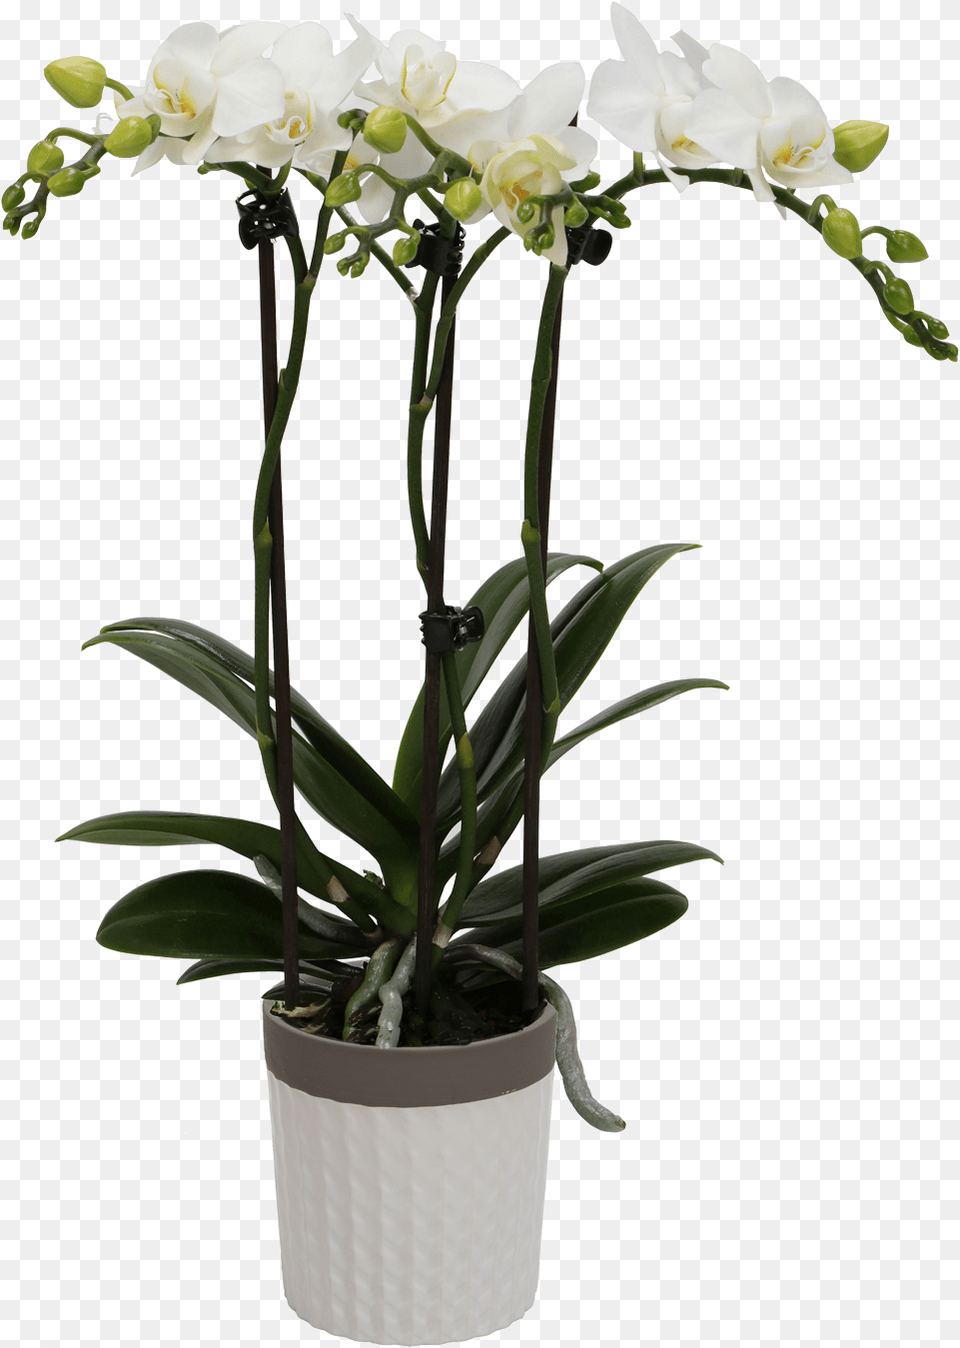 Flower Orchids Kolibri Orchids, Flower Arrangement, Plant, Potted Plant, Orchid Png Image